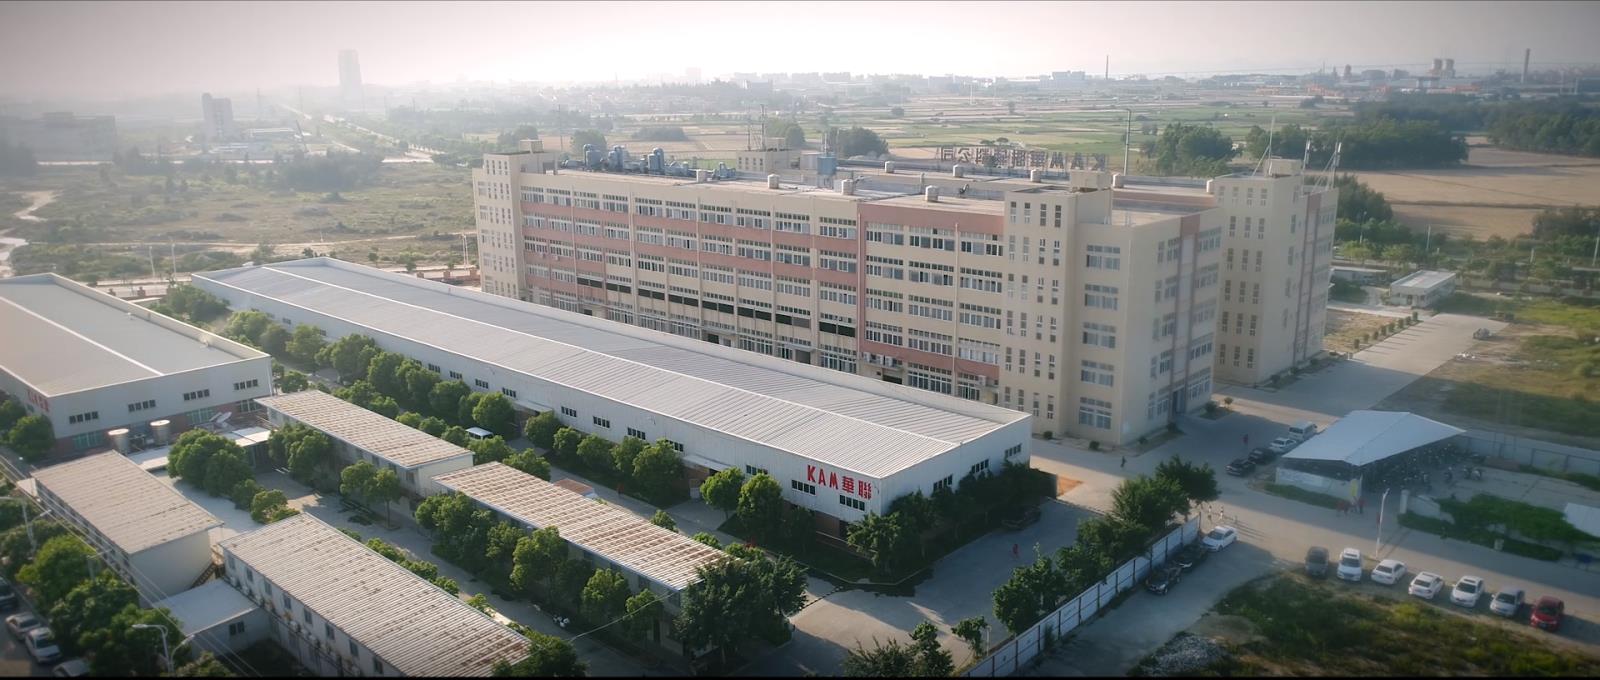 公司创办于1987年6月，是一家致力于是一家专业从事服装配件设计开发、生产和销售的生产商。 公司总部位于被誉为中国“辅料名镇”的石狮宝盖镇高科技工业园区，另在…